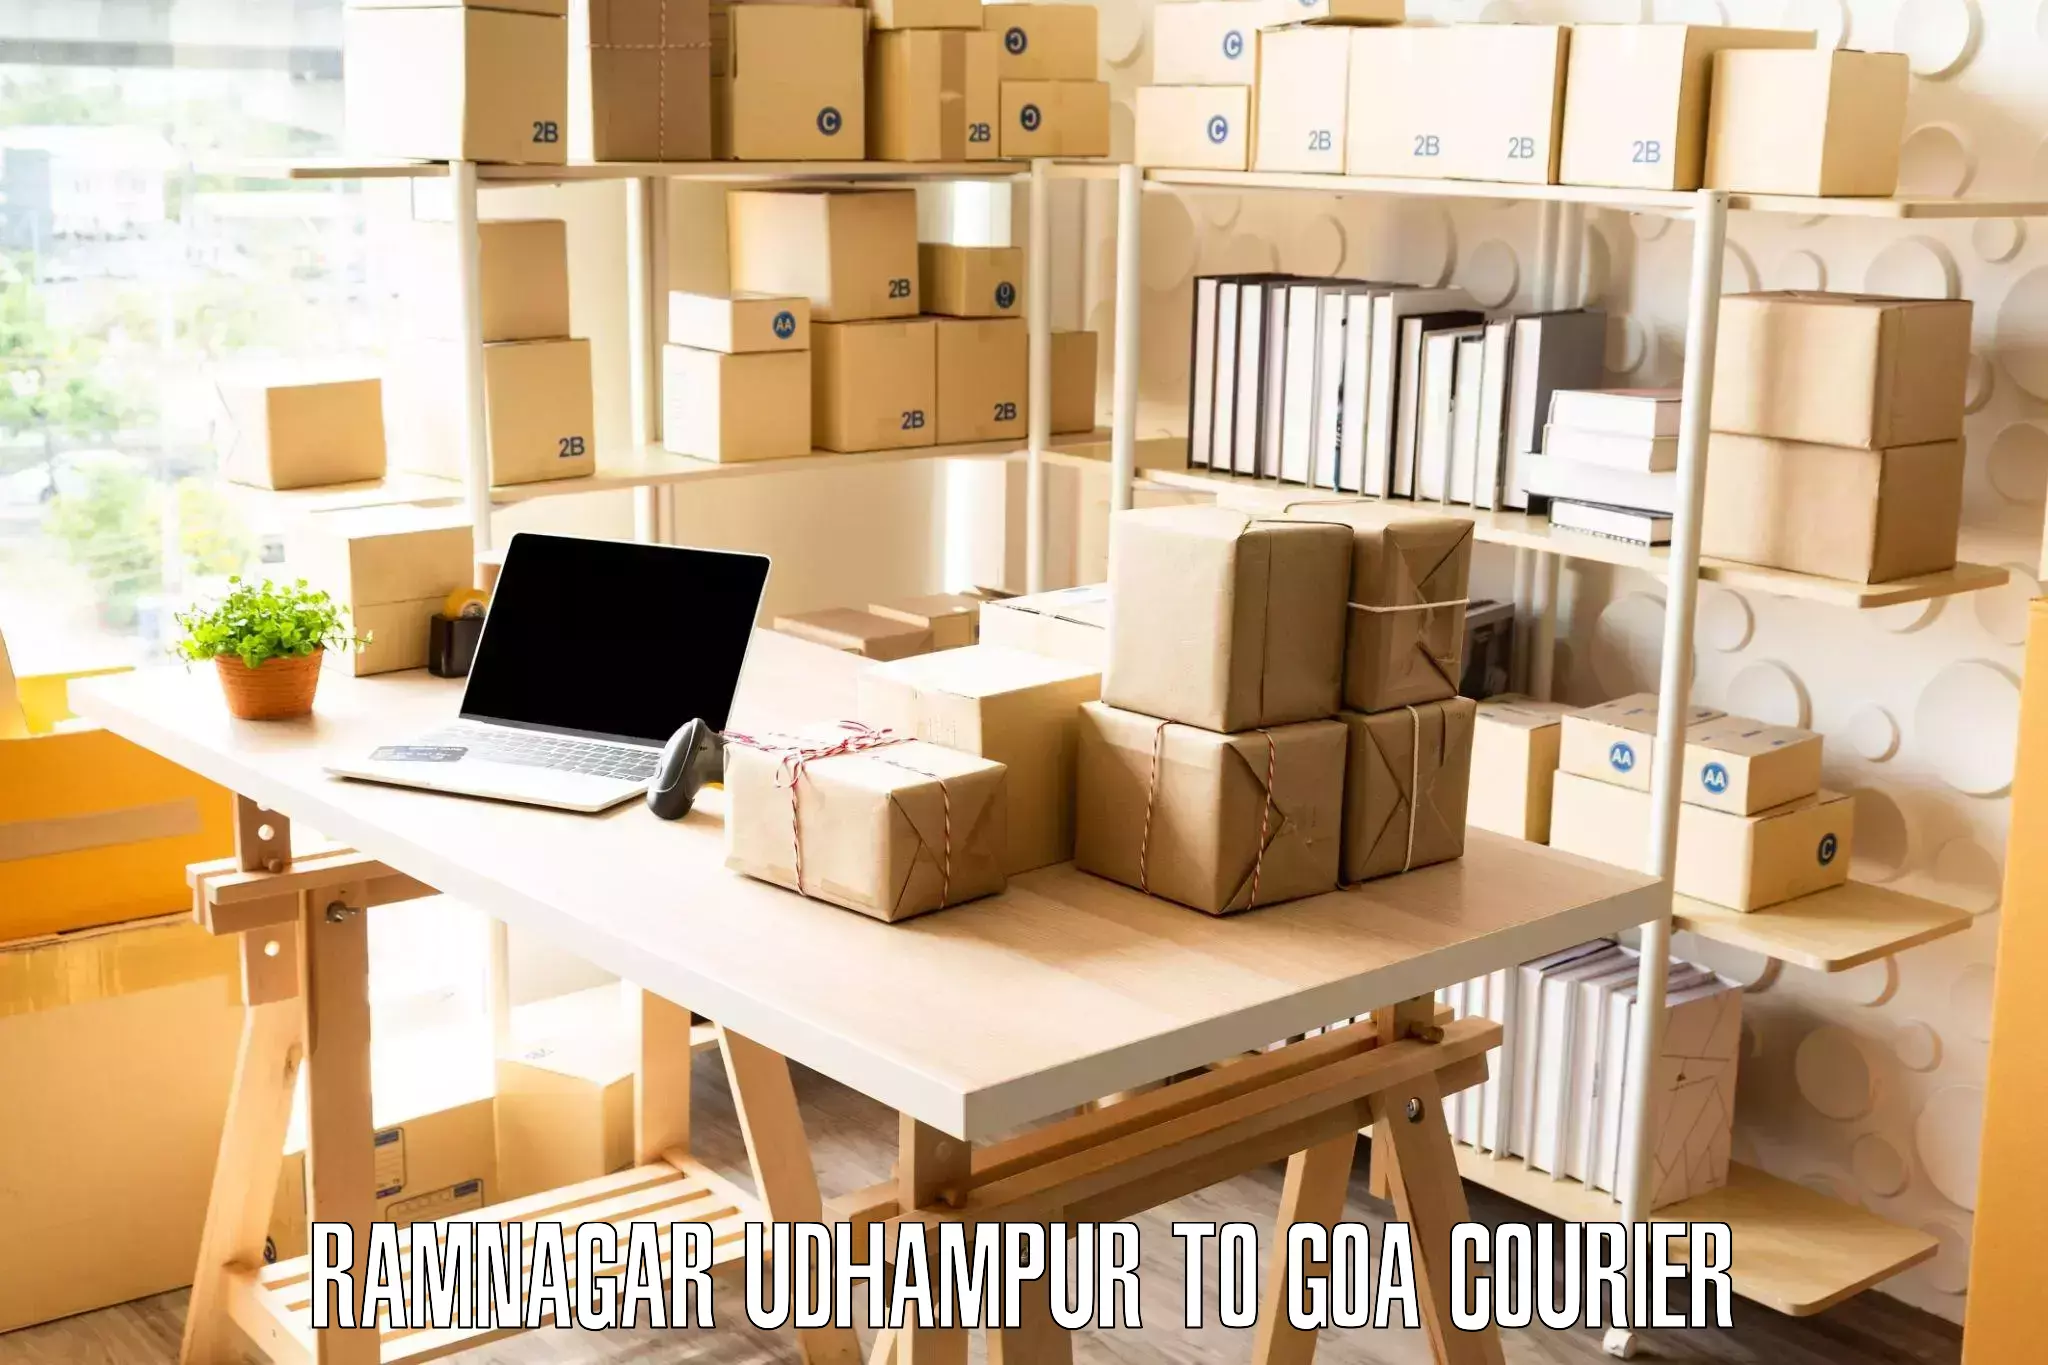 Furniture moving experts Ramnagar Udhampur to NIT Goa